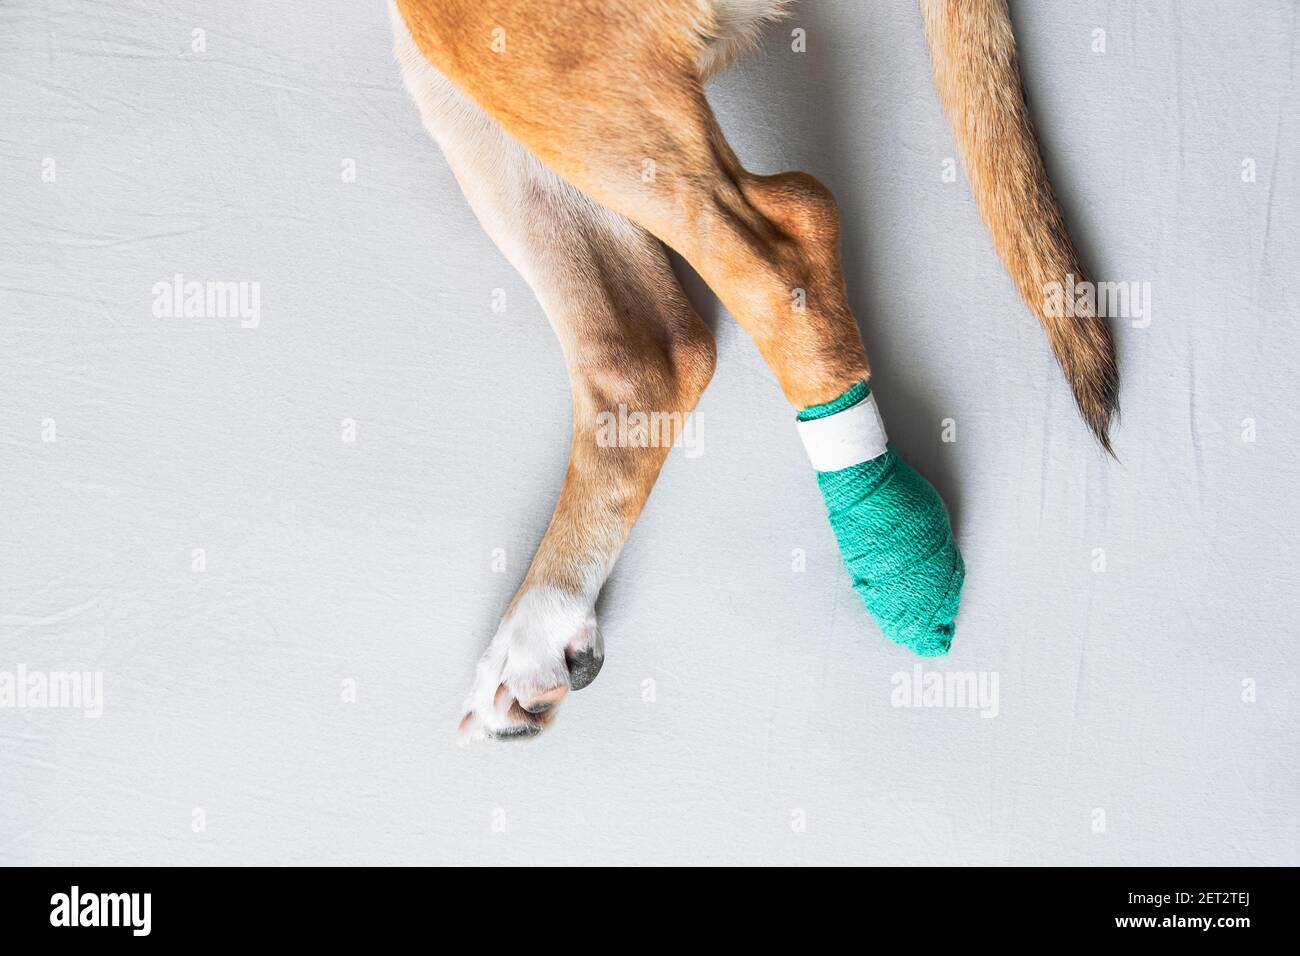 Zampe di cane in una bendaggio, vista ravvicinata. Animali feriti, trauma, gamba ferita di un cucciolo, concetti veterinari Foto Stock